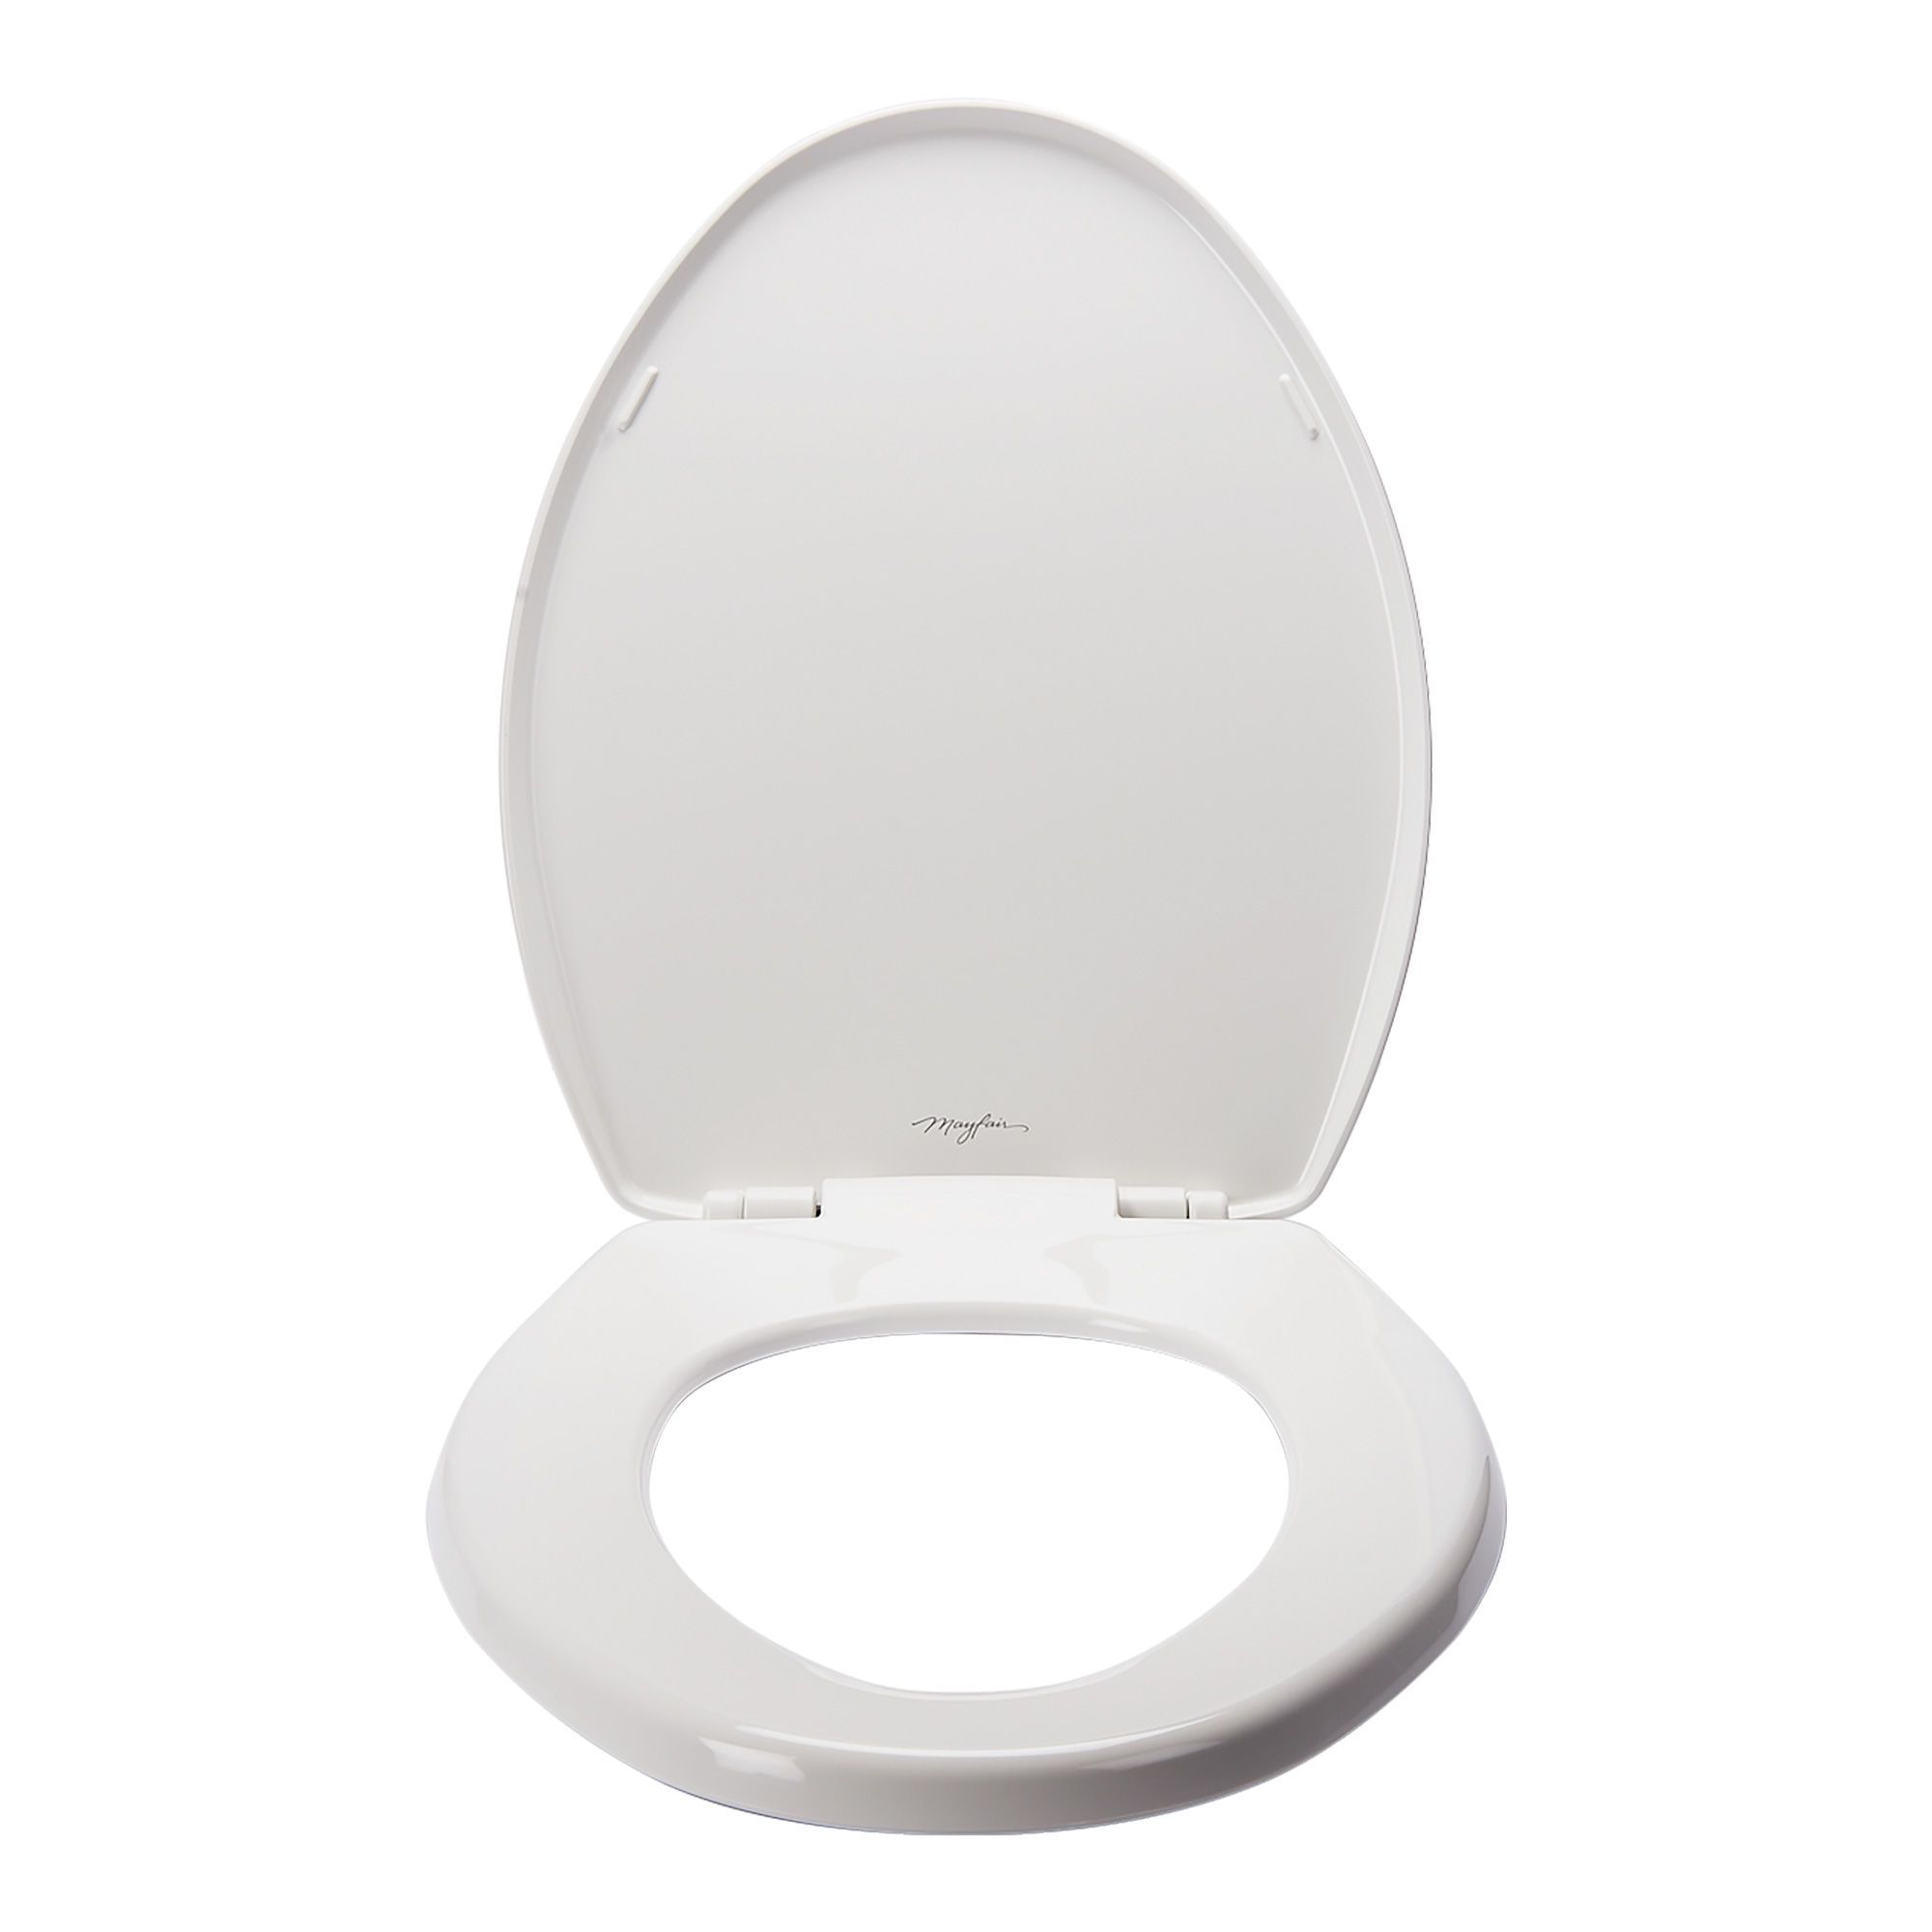 Sur-lunette de toilette Confort- Aides pour les toilettes - Marignane  Medical